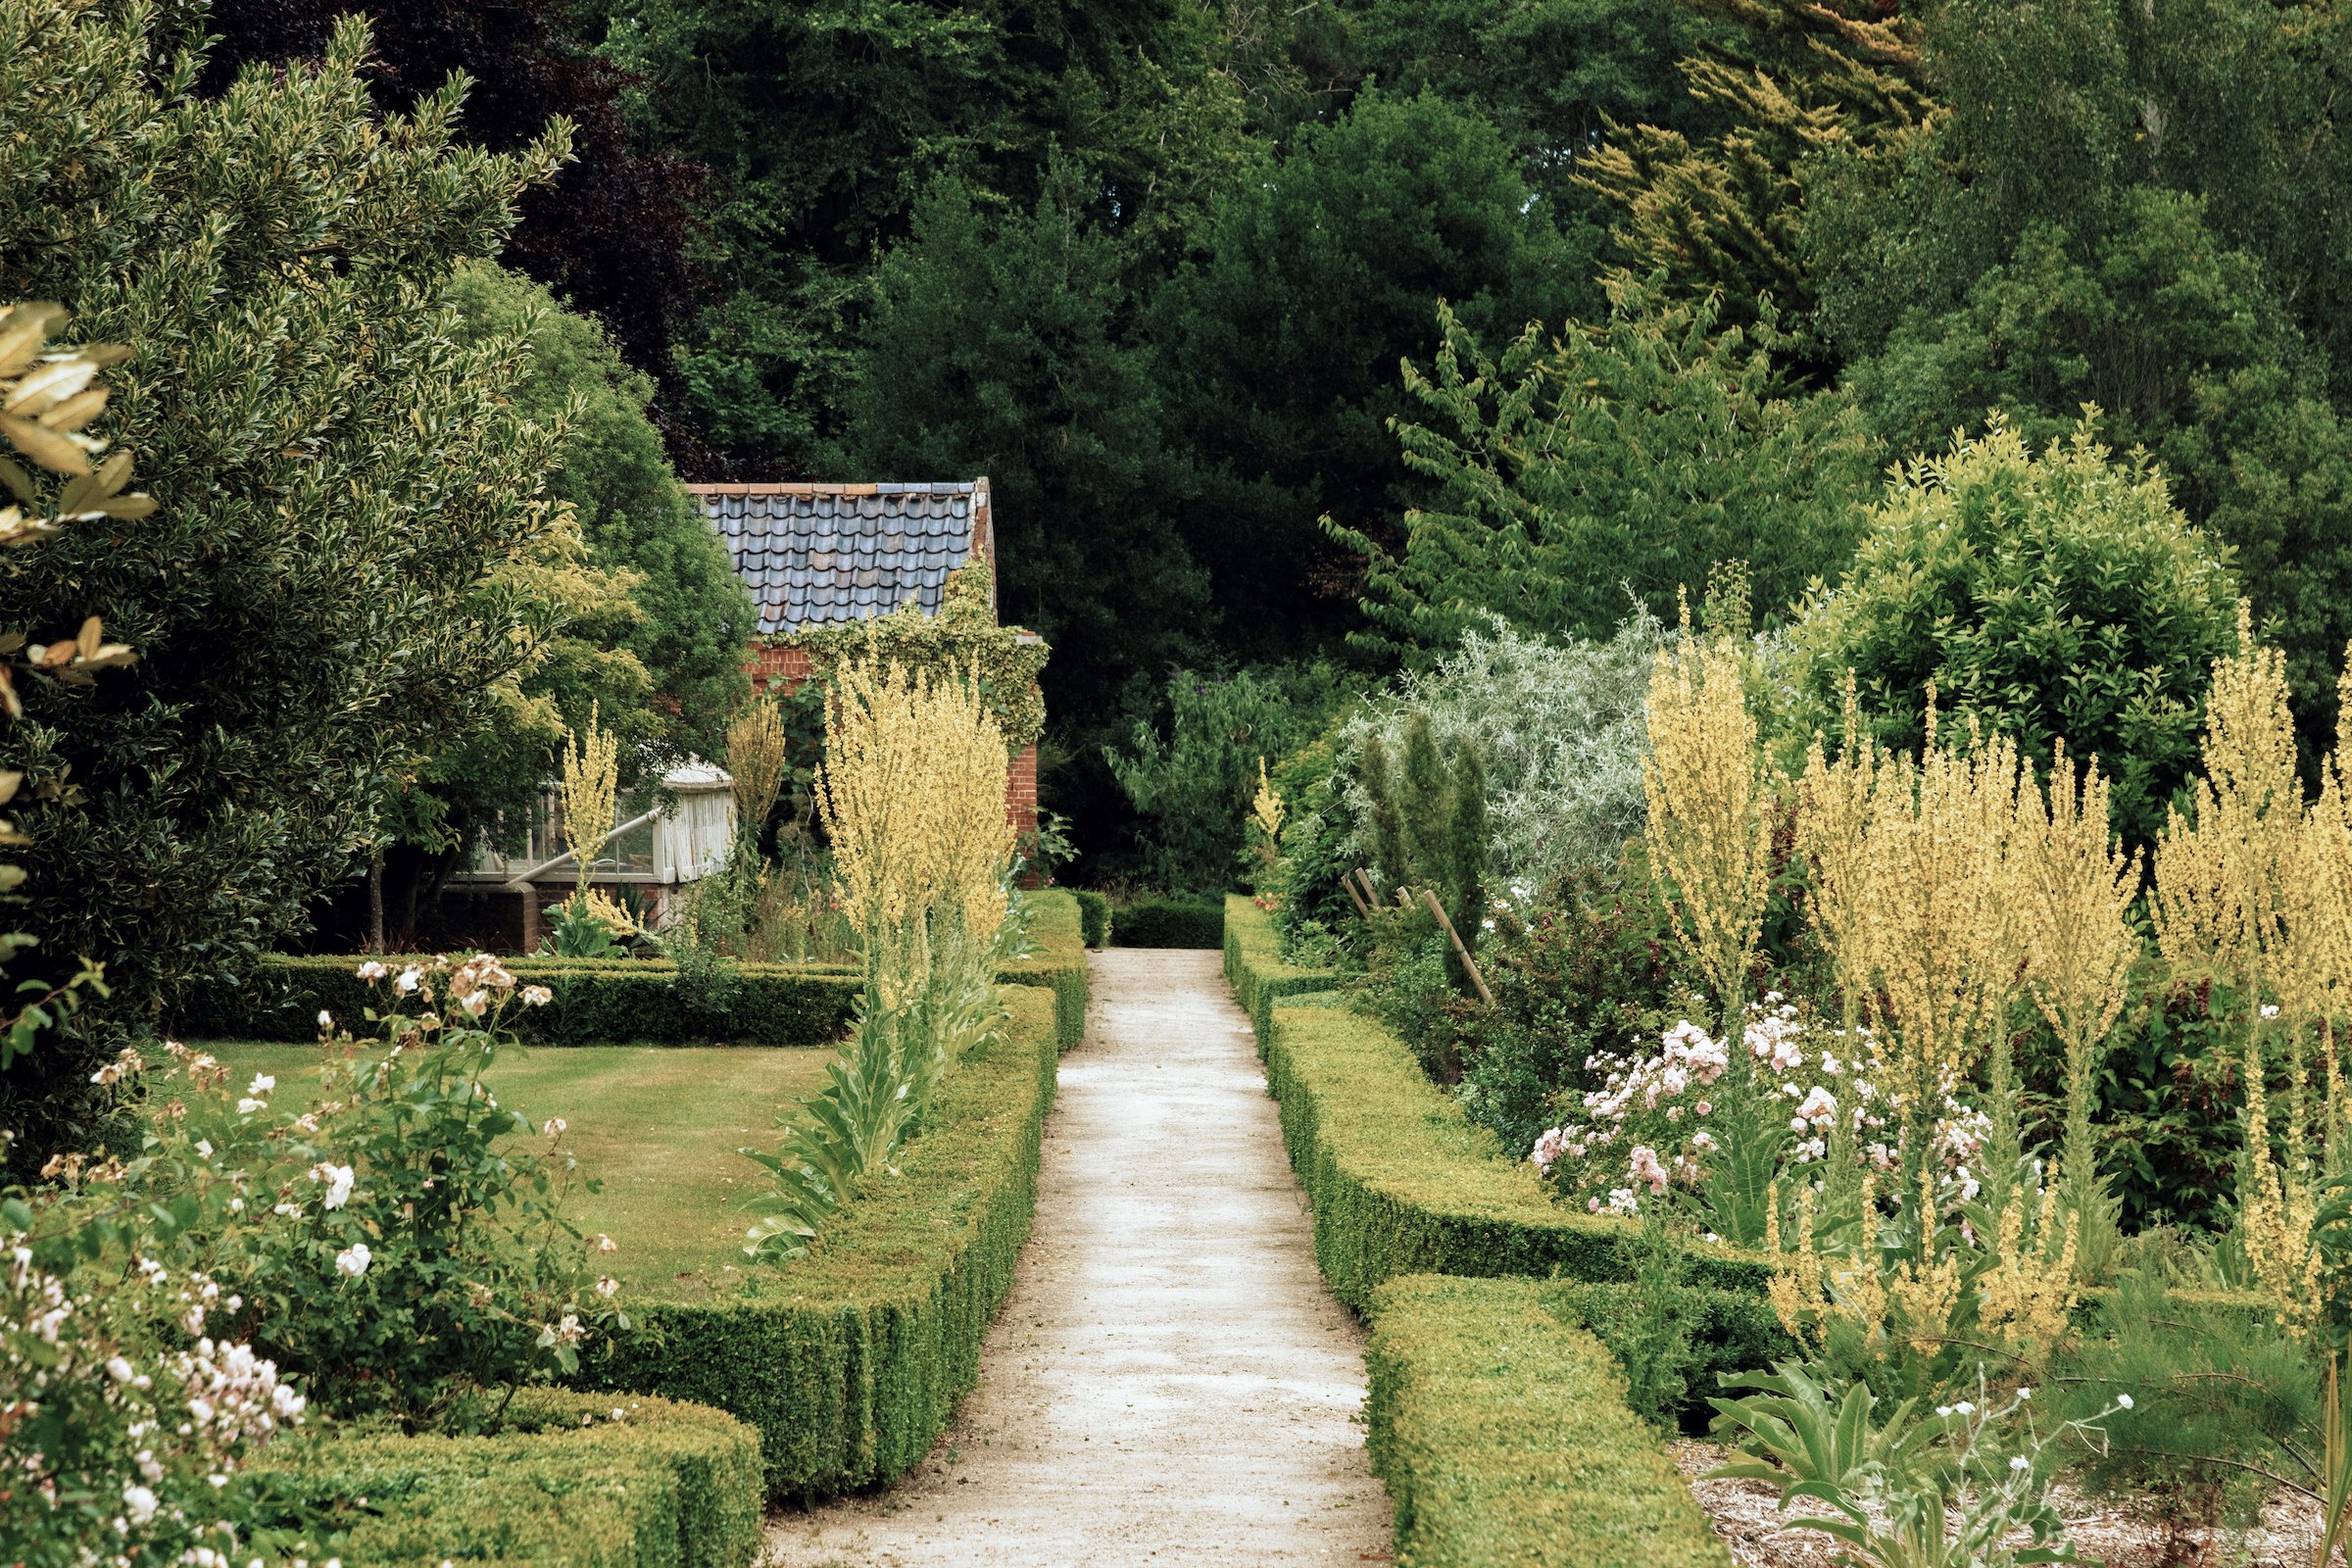 Fritton Lake England gardens by Edvinas Bruzas.JPG